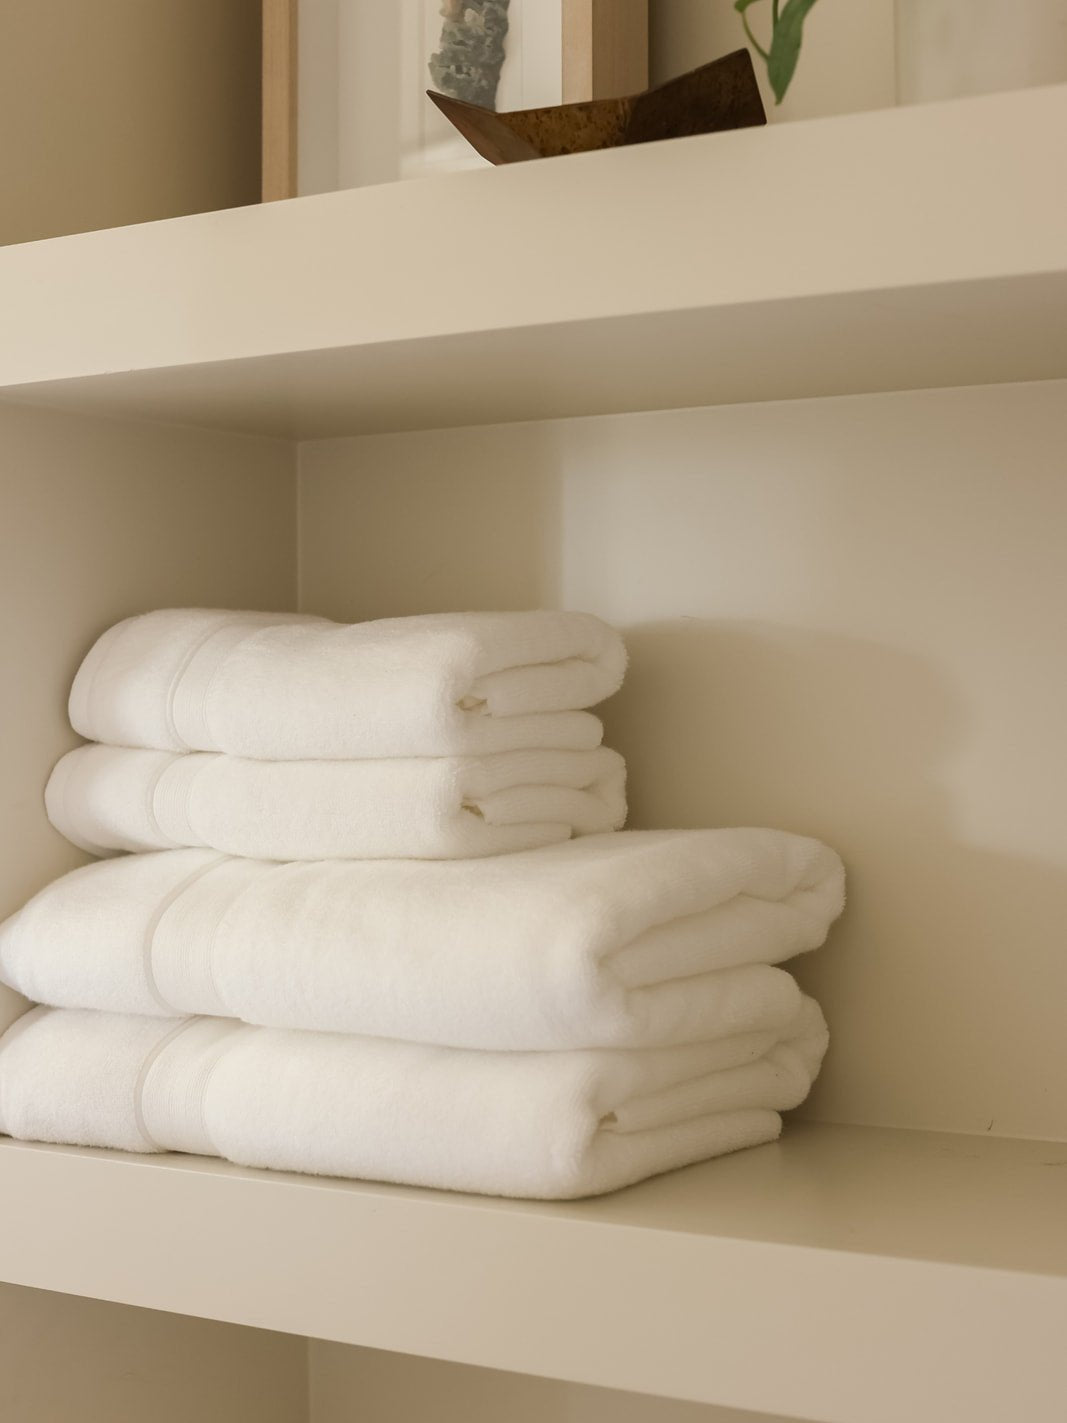 White towels folded on shelf 